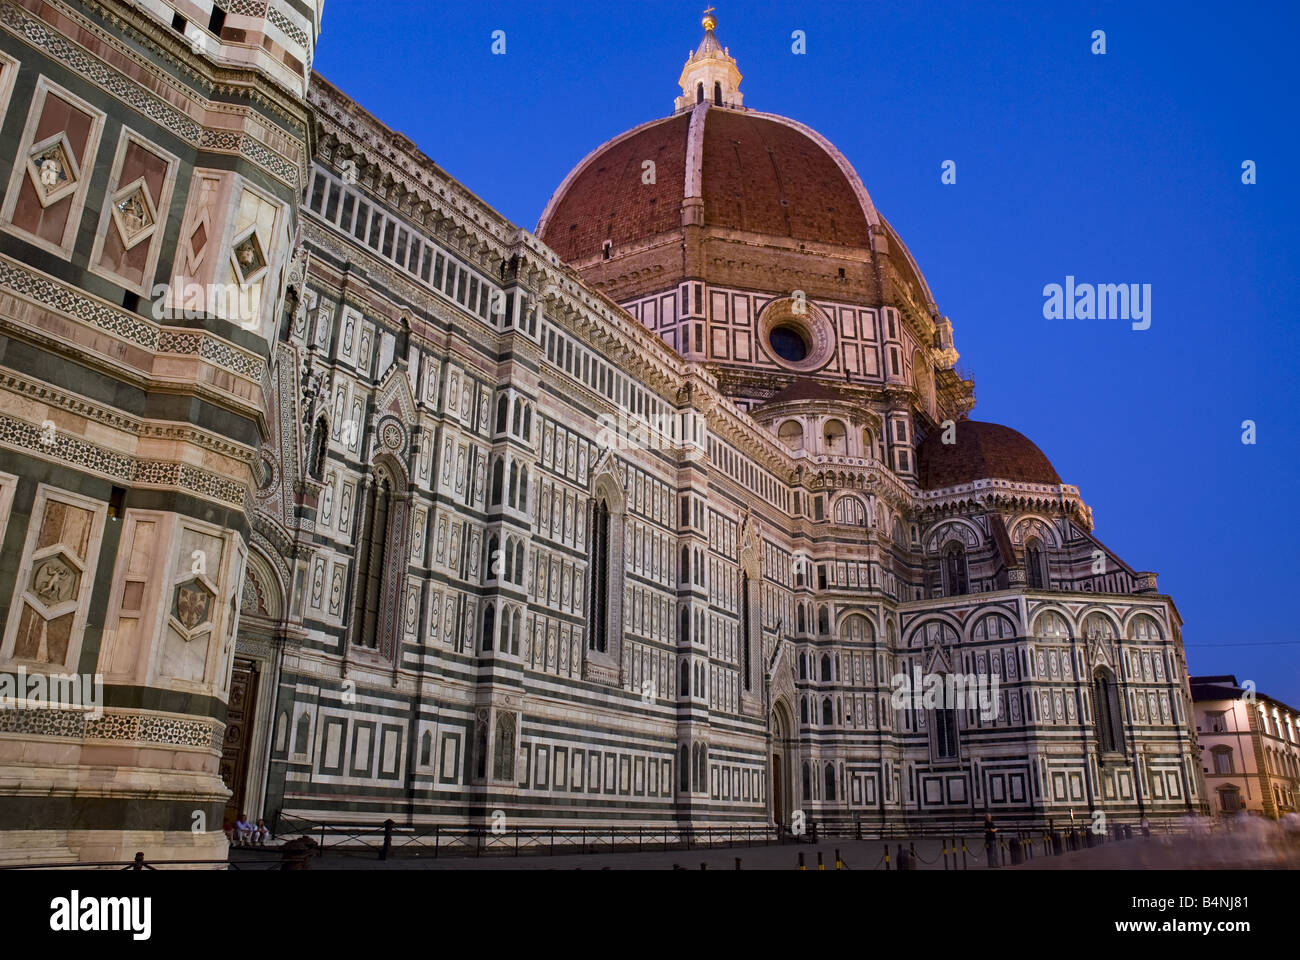 Il Duomo di Firenze (Cattedrale di S. Maria del Fiore), Firenze, Toscana, Italia Stock Photo